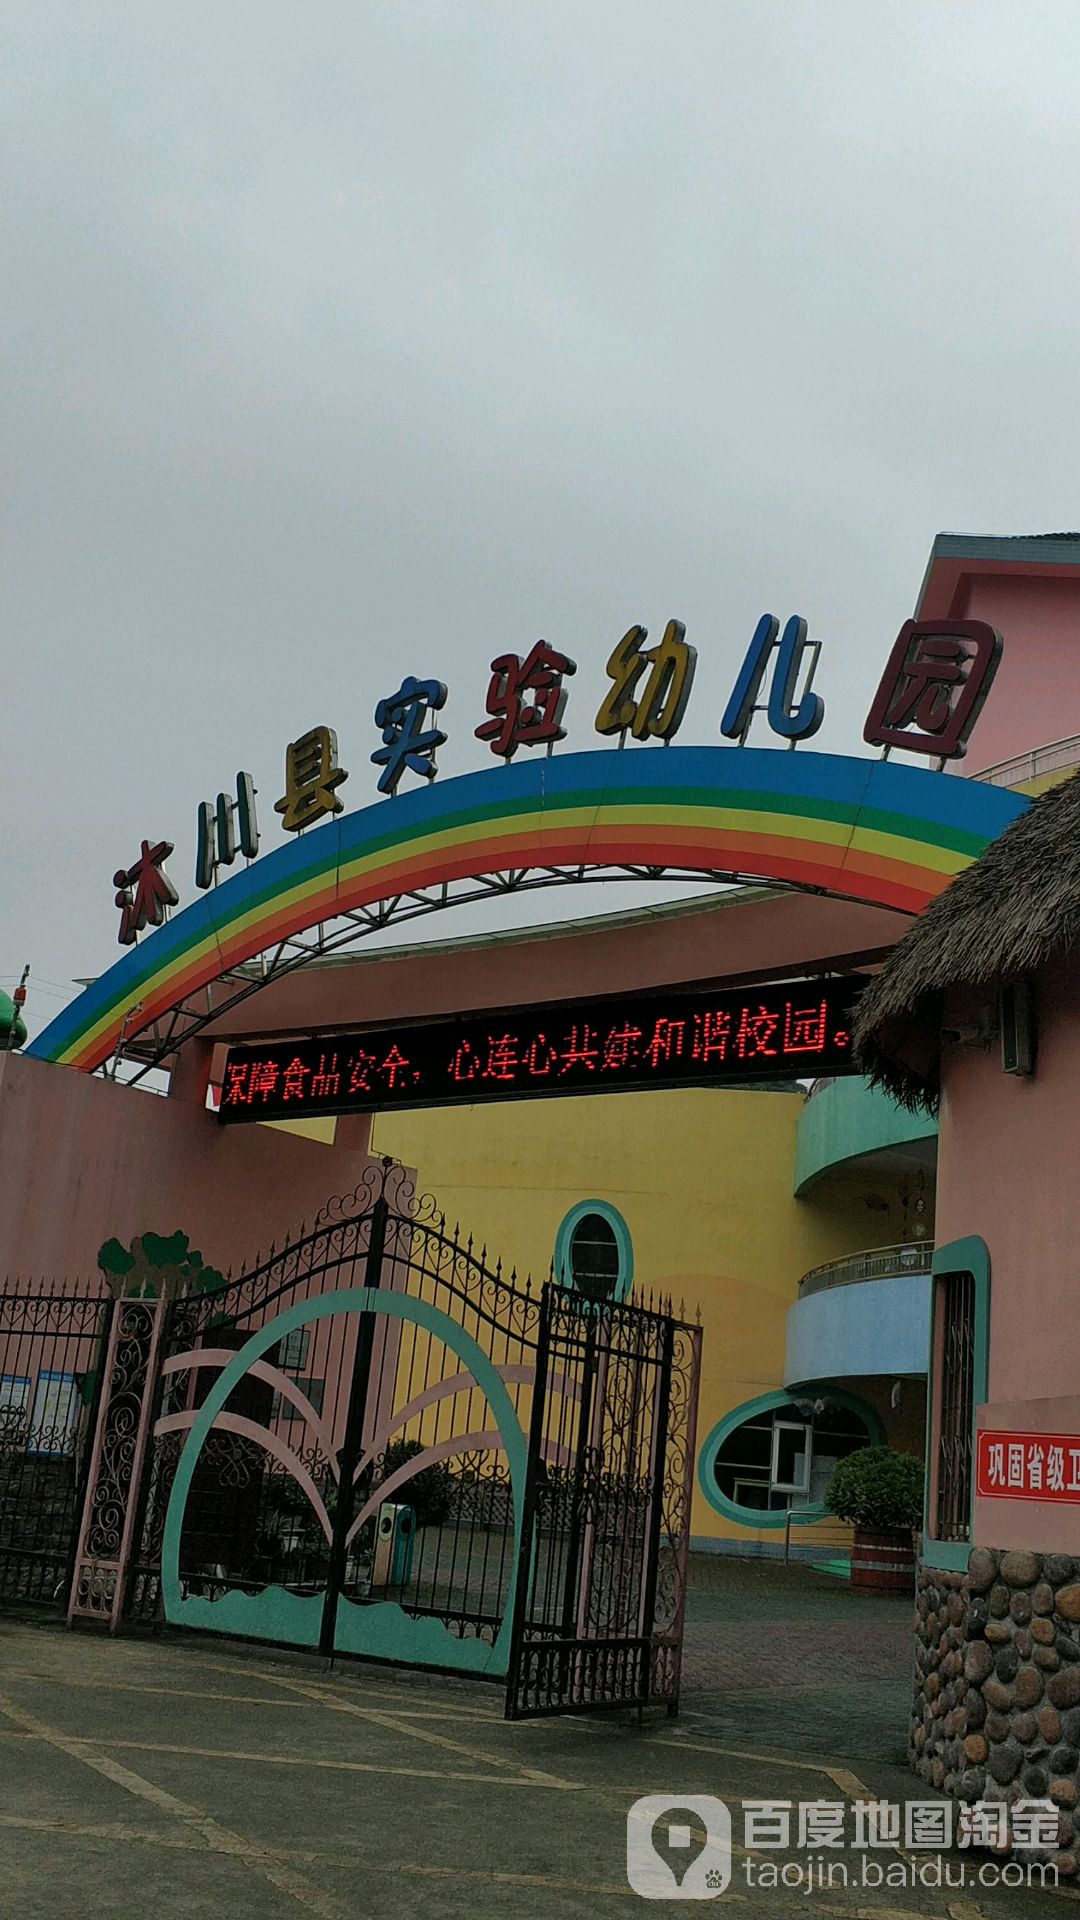 沐川县实验幼儿园的图片